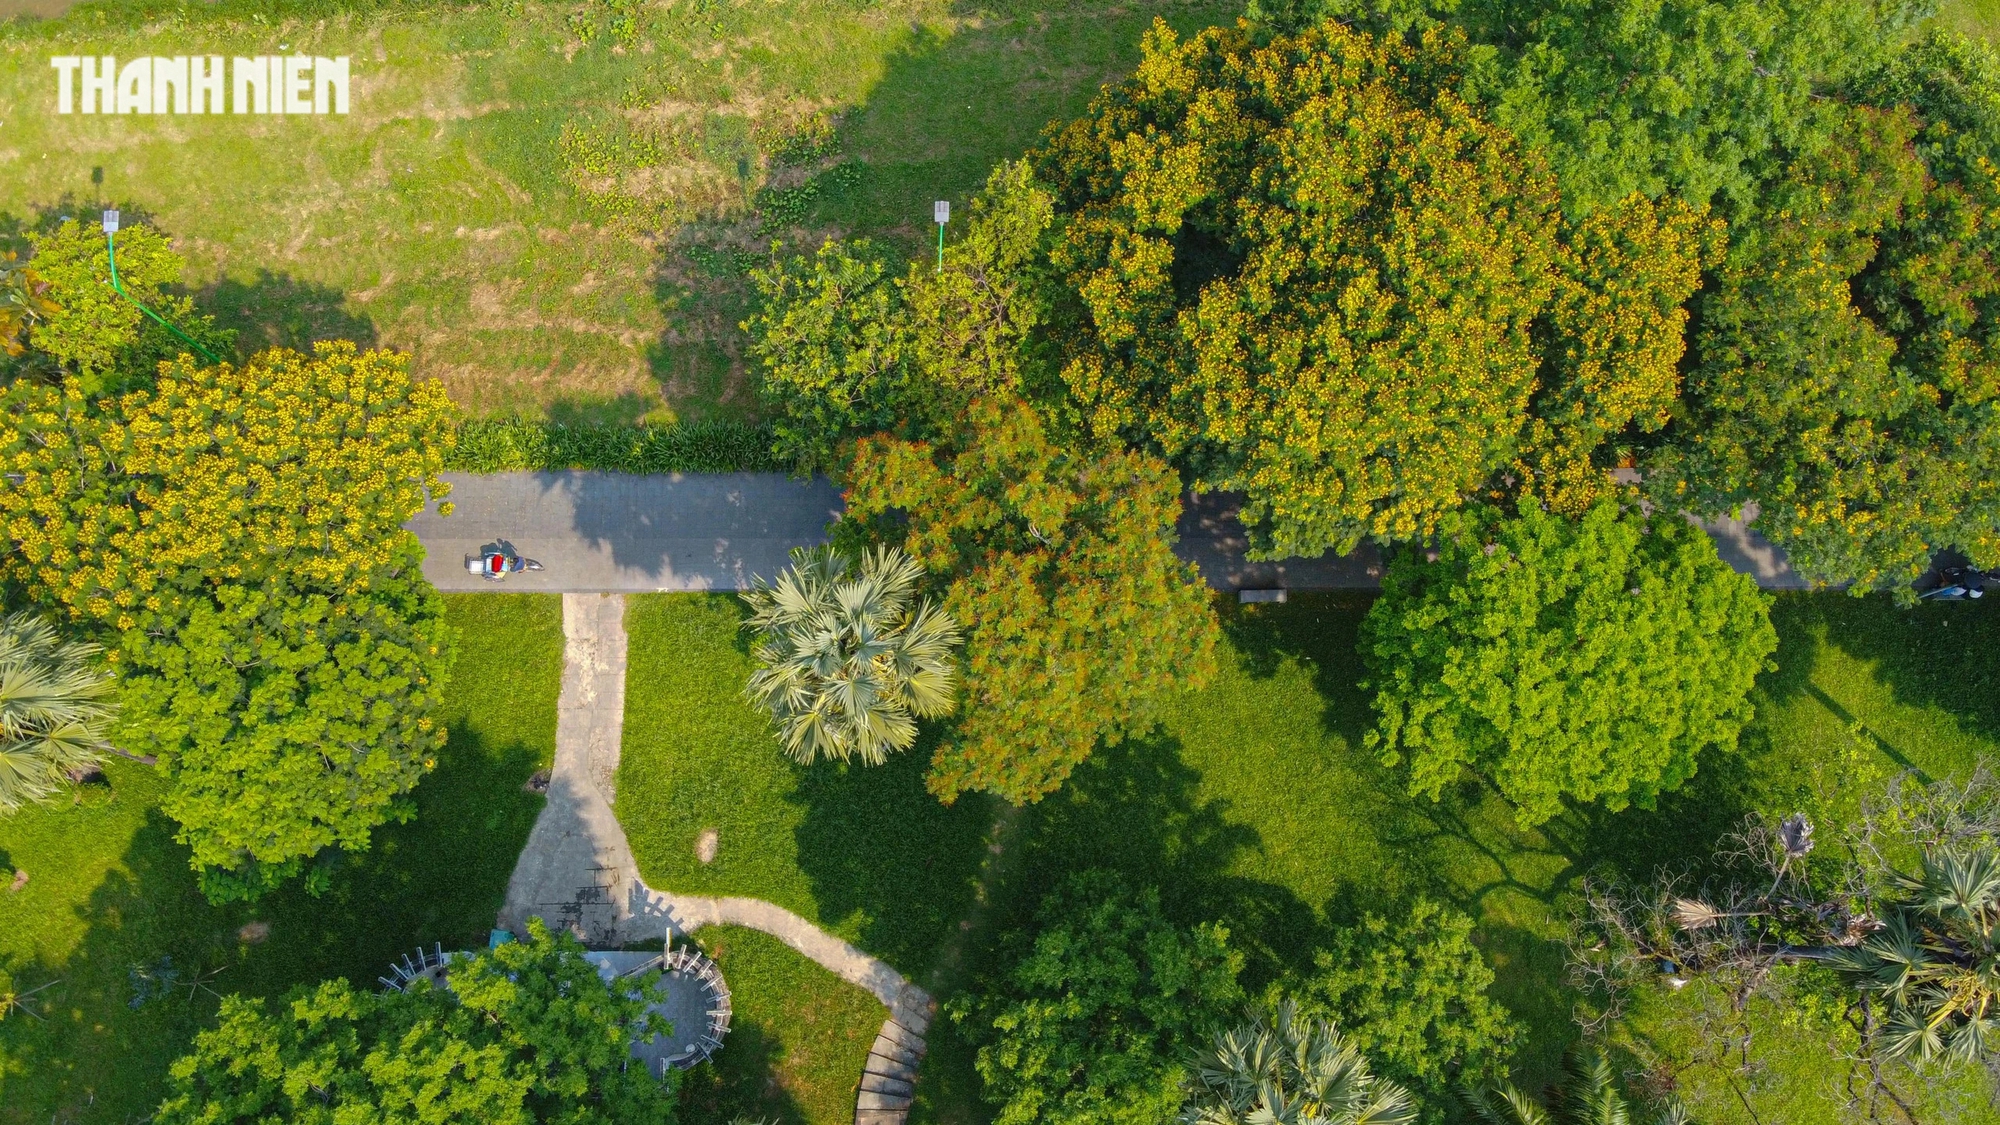 Thân cây điệp vàng lớn có thể cao đến 15 mét, tán phủ rộng, được trồng để làm đẹp và lấy bóng mát trong công viên